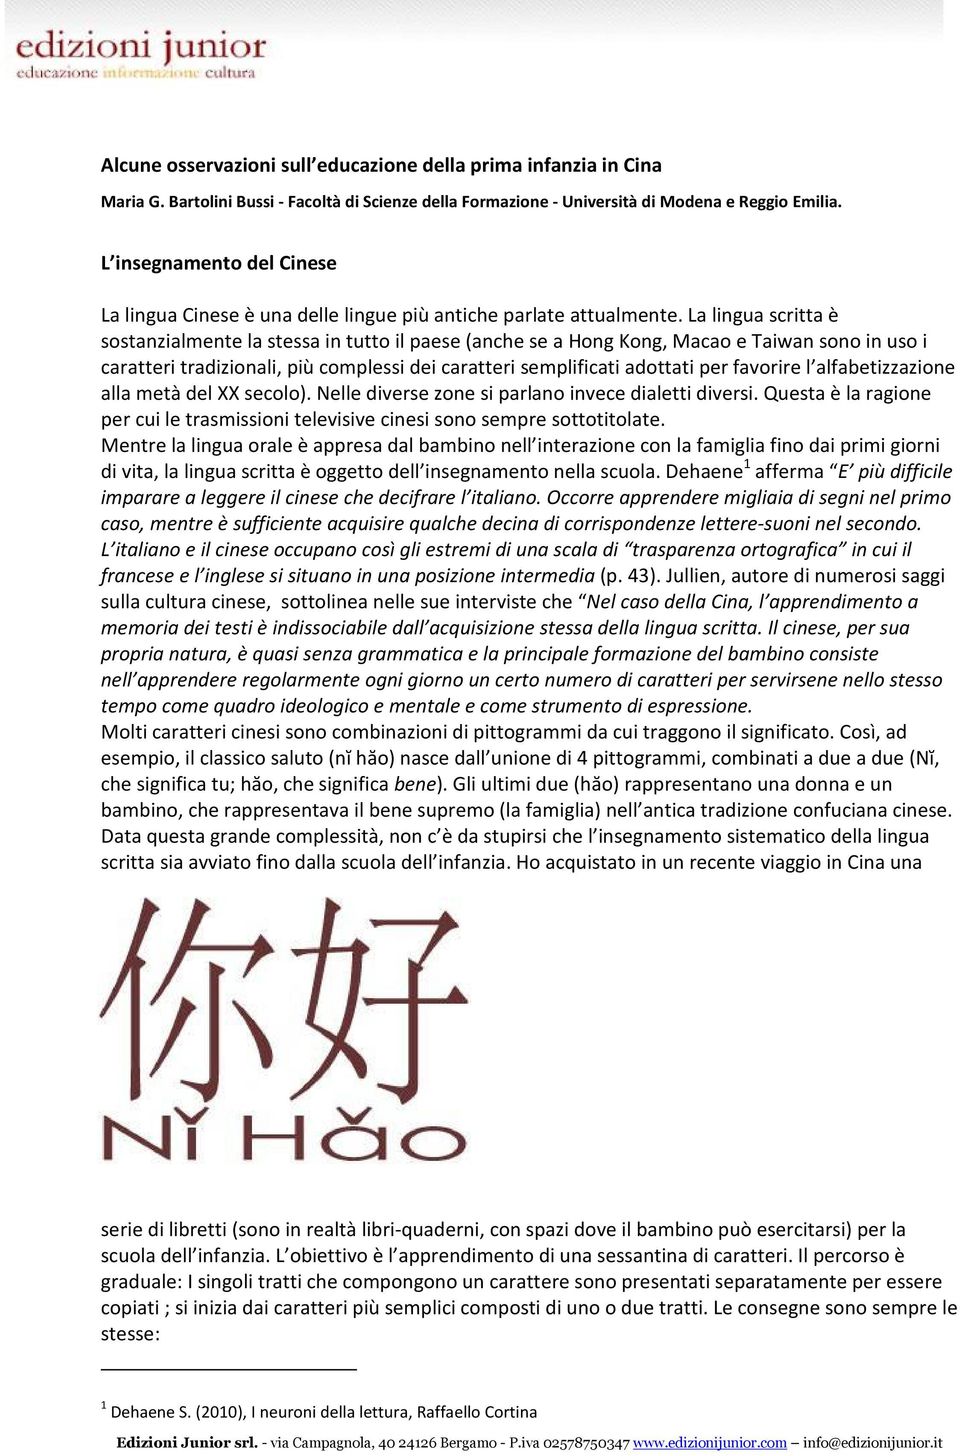 La lingua scritta è sostanzialmente la stessa in tutto il paese (anche se a Hong Kong, Macao e Taiwan sono in uso i caratteri tradizionali, più complessi dei caratteri semplificati adottati per